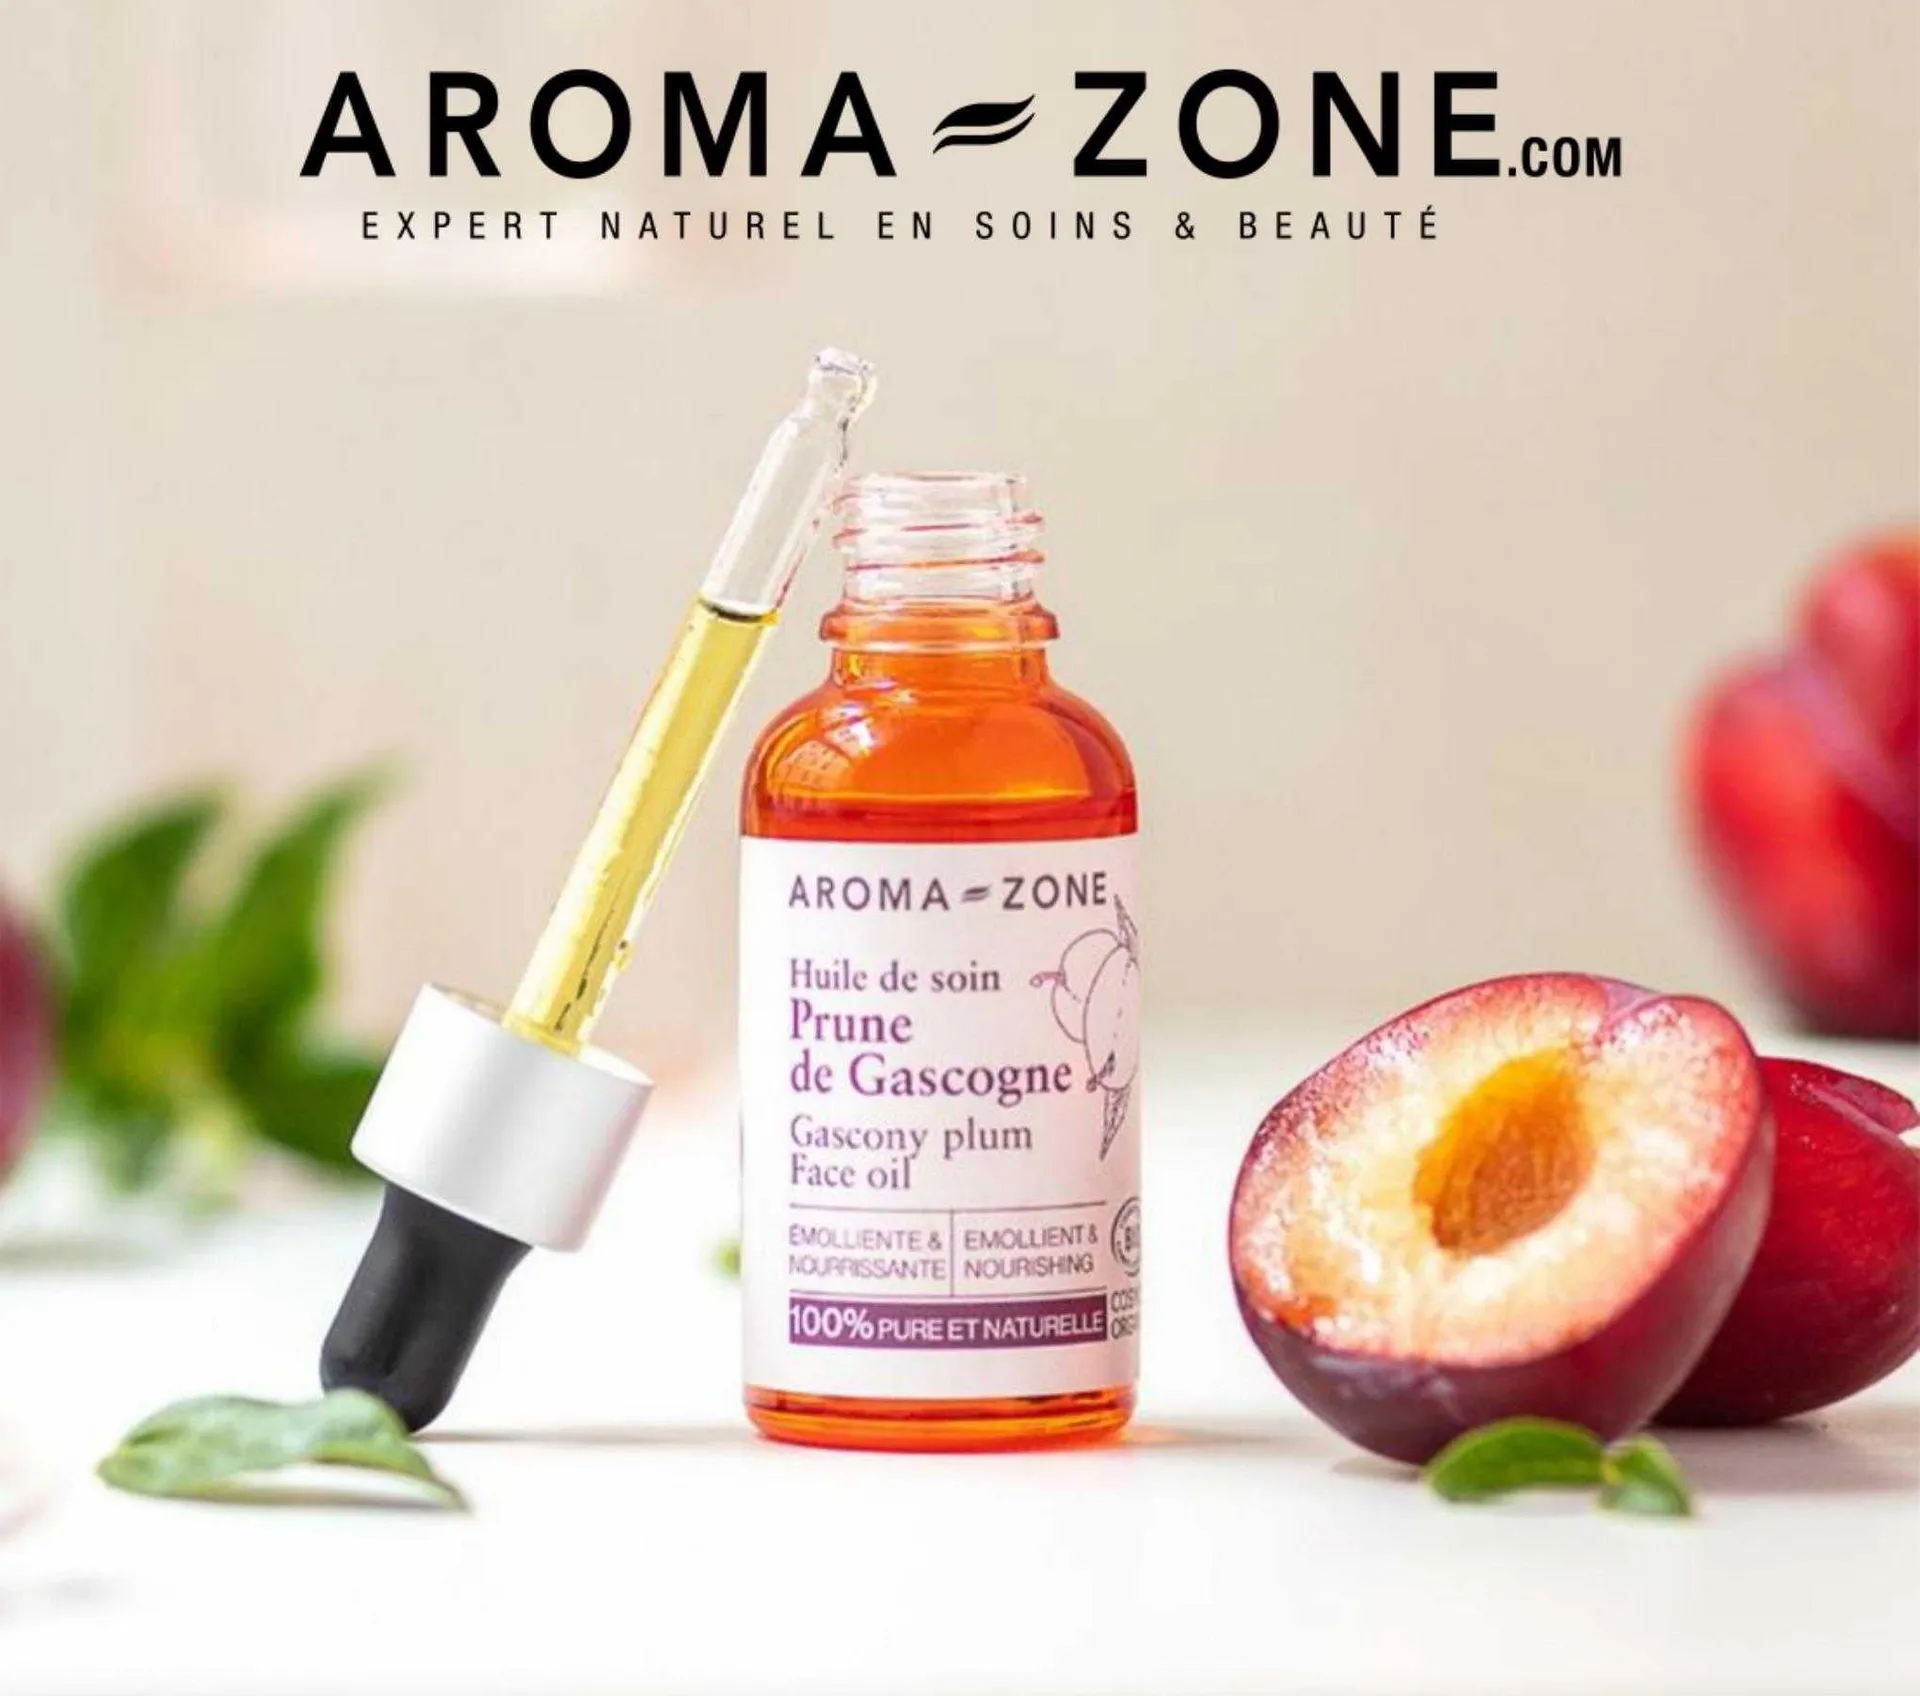 Catalogue Aroma Zone - 1